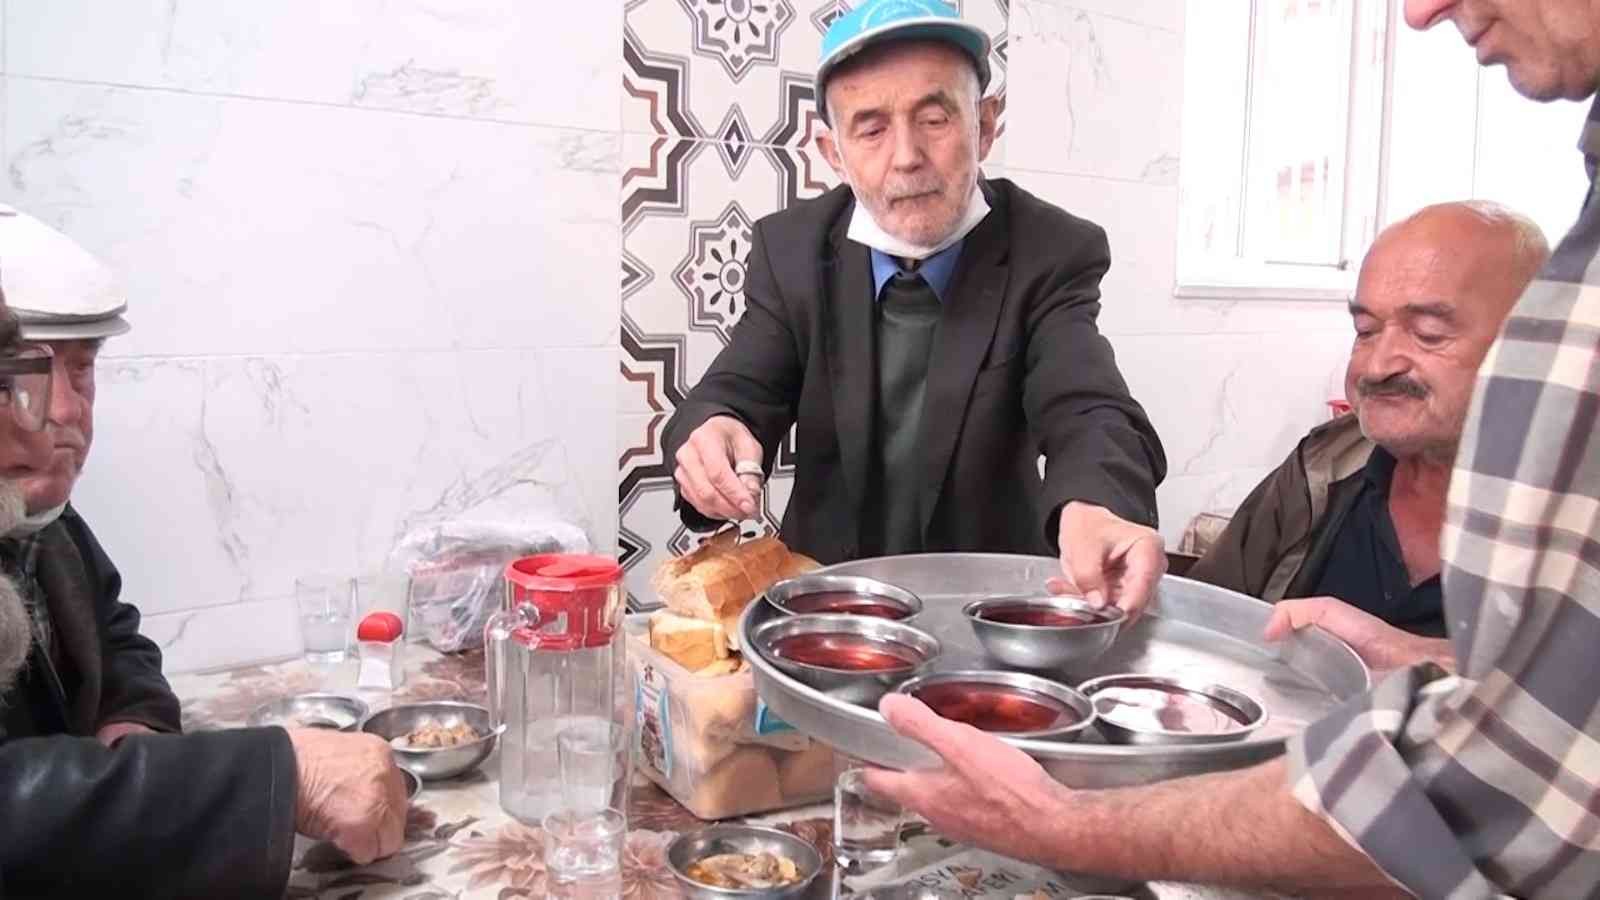 Çarşının ’Himmet babası’ 40 yıldır askıda geleneği ile yemek ikram ediyor #kutahya